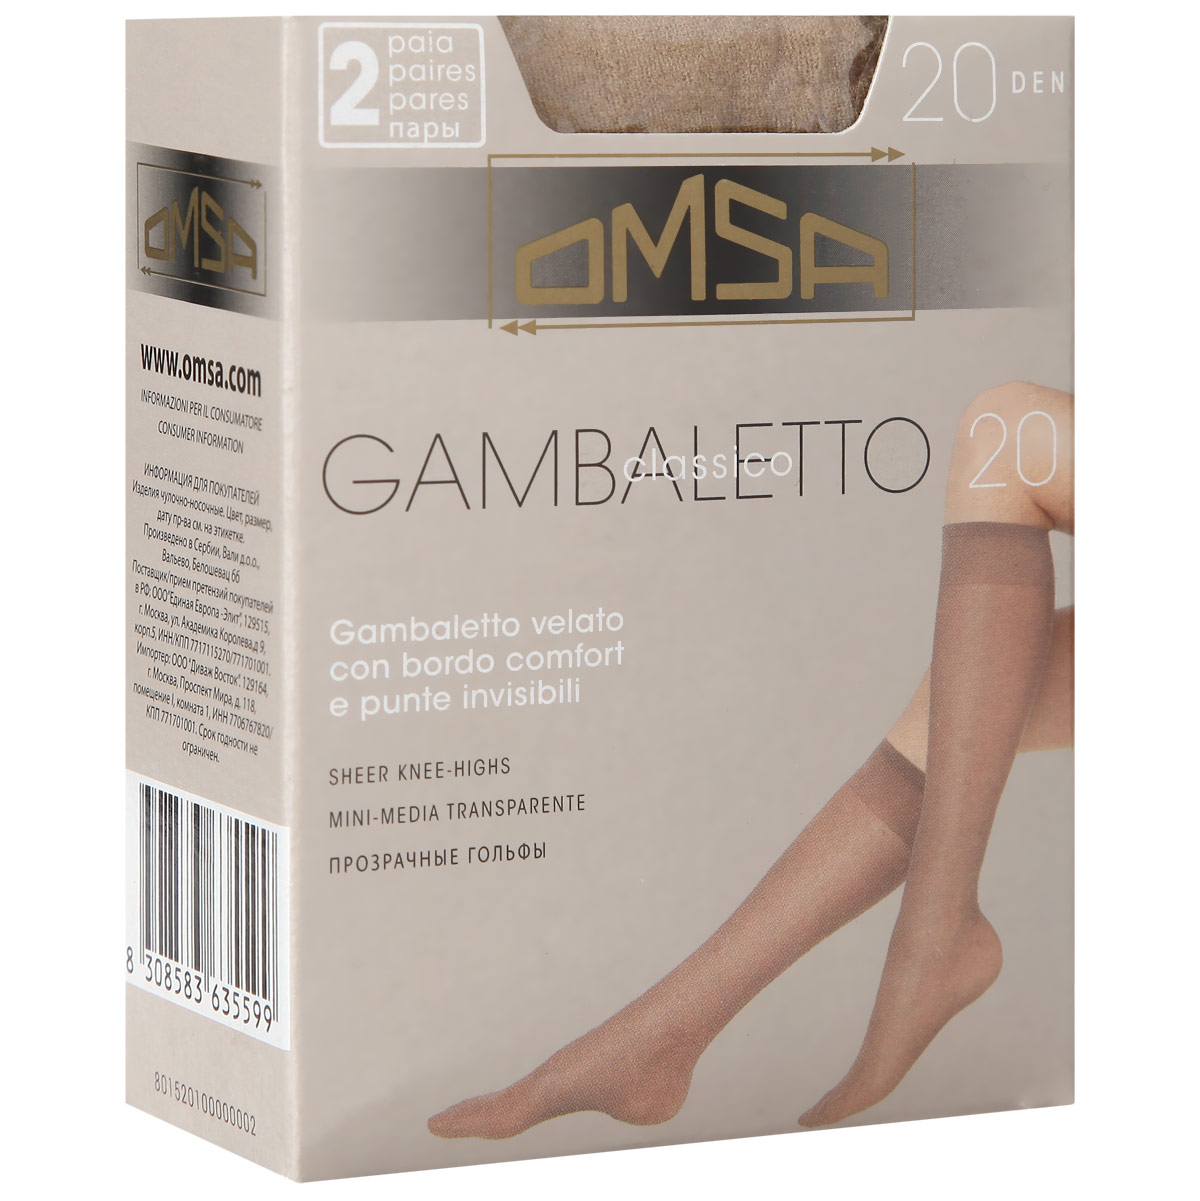 Гольфы женские Omsa Gambaletto Classico 20. Caramello (бледно-коричневый), 2 пары. Размер универсальный